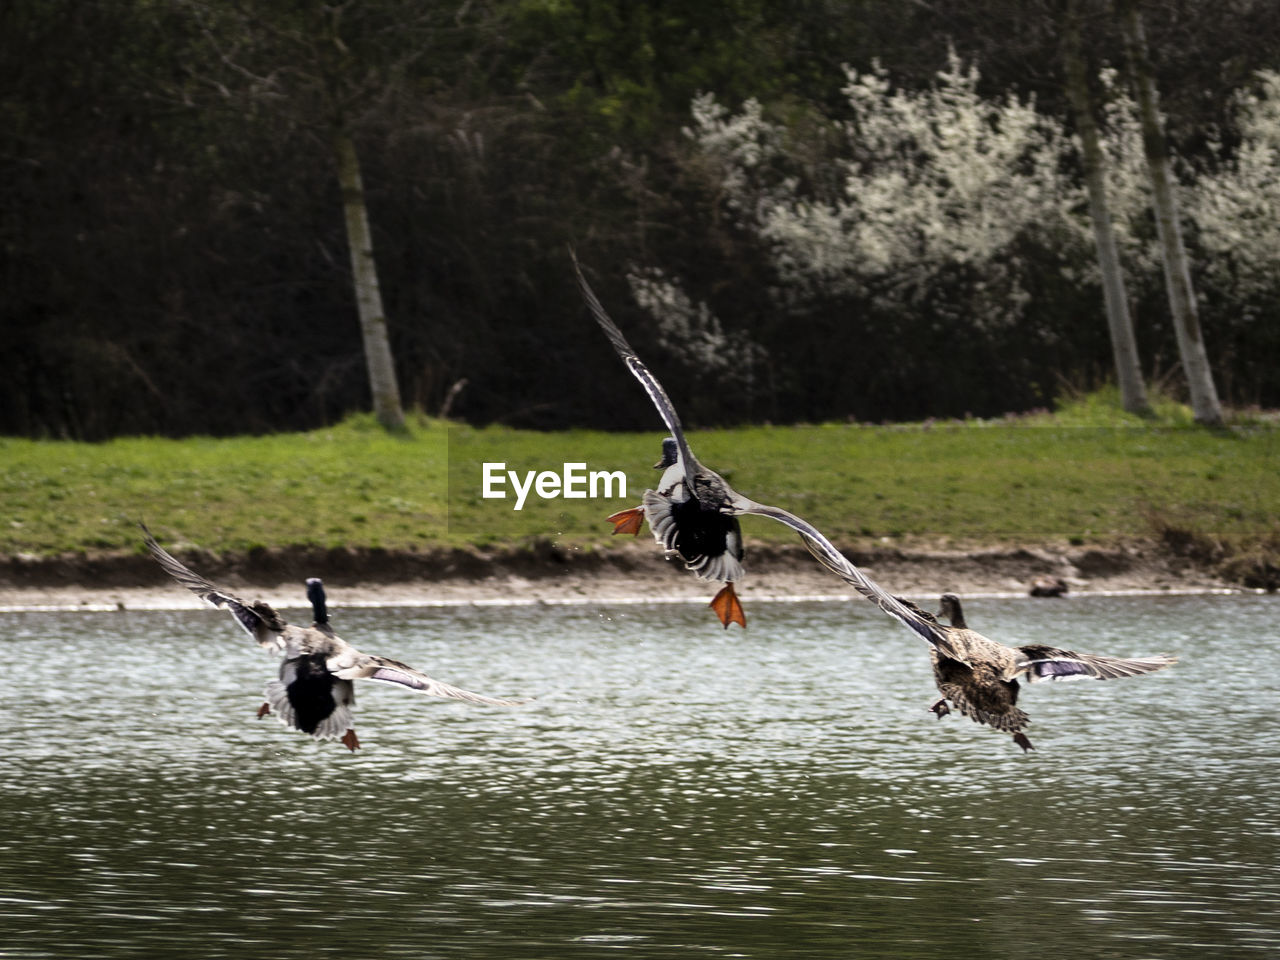 BIRD FLYING OVER LAKE